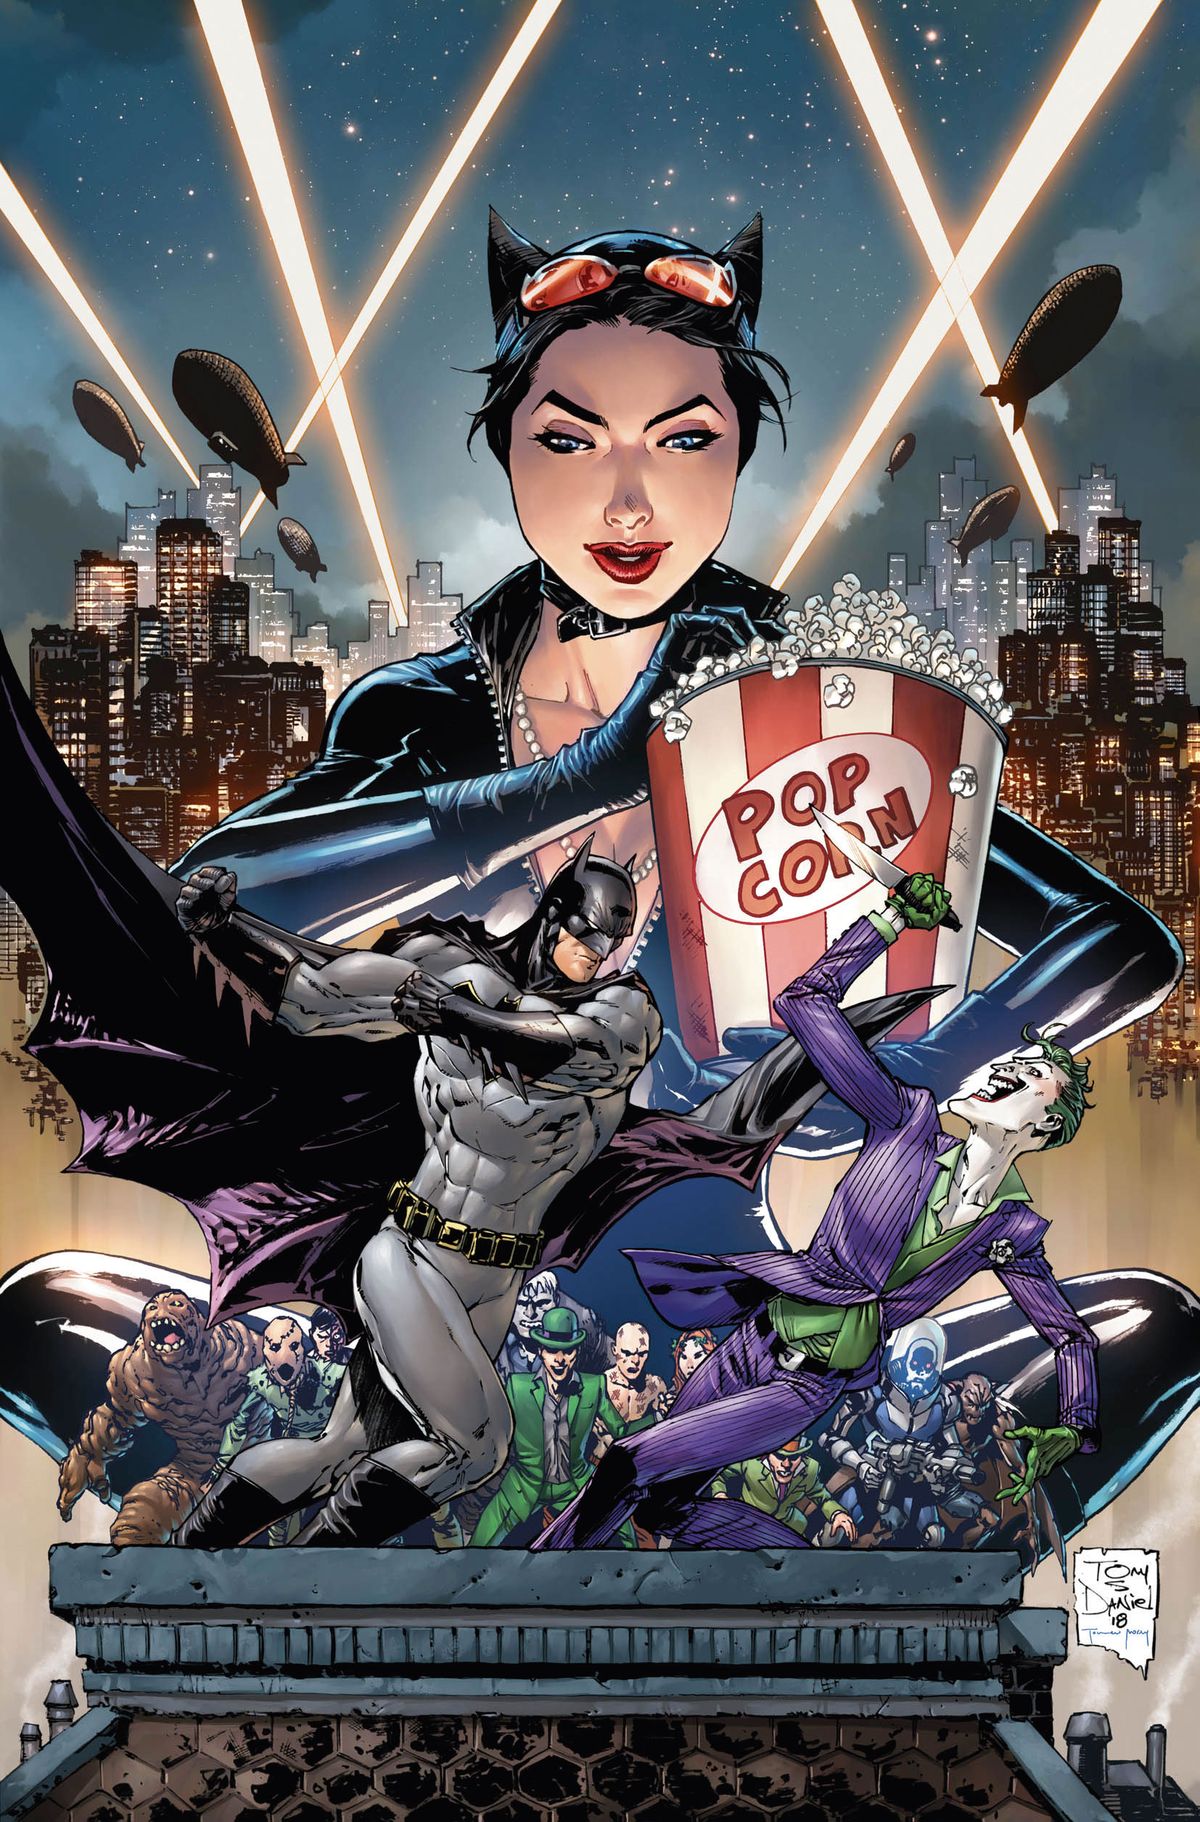 Catwoman schlemmt Popcorn, während sie Batman beim Kampf gegen den Joker zuschaut